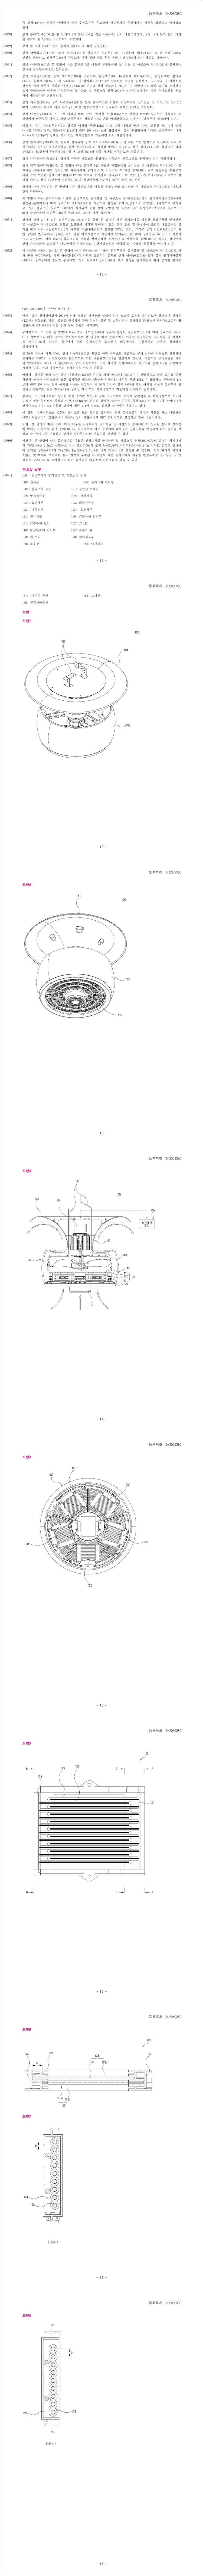 특허 제10-2059380호(플라즈마를 이용한 천정부착형 공기살균 및 시설소독 장치, 주식회사 플라랩, 